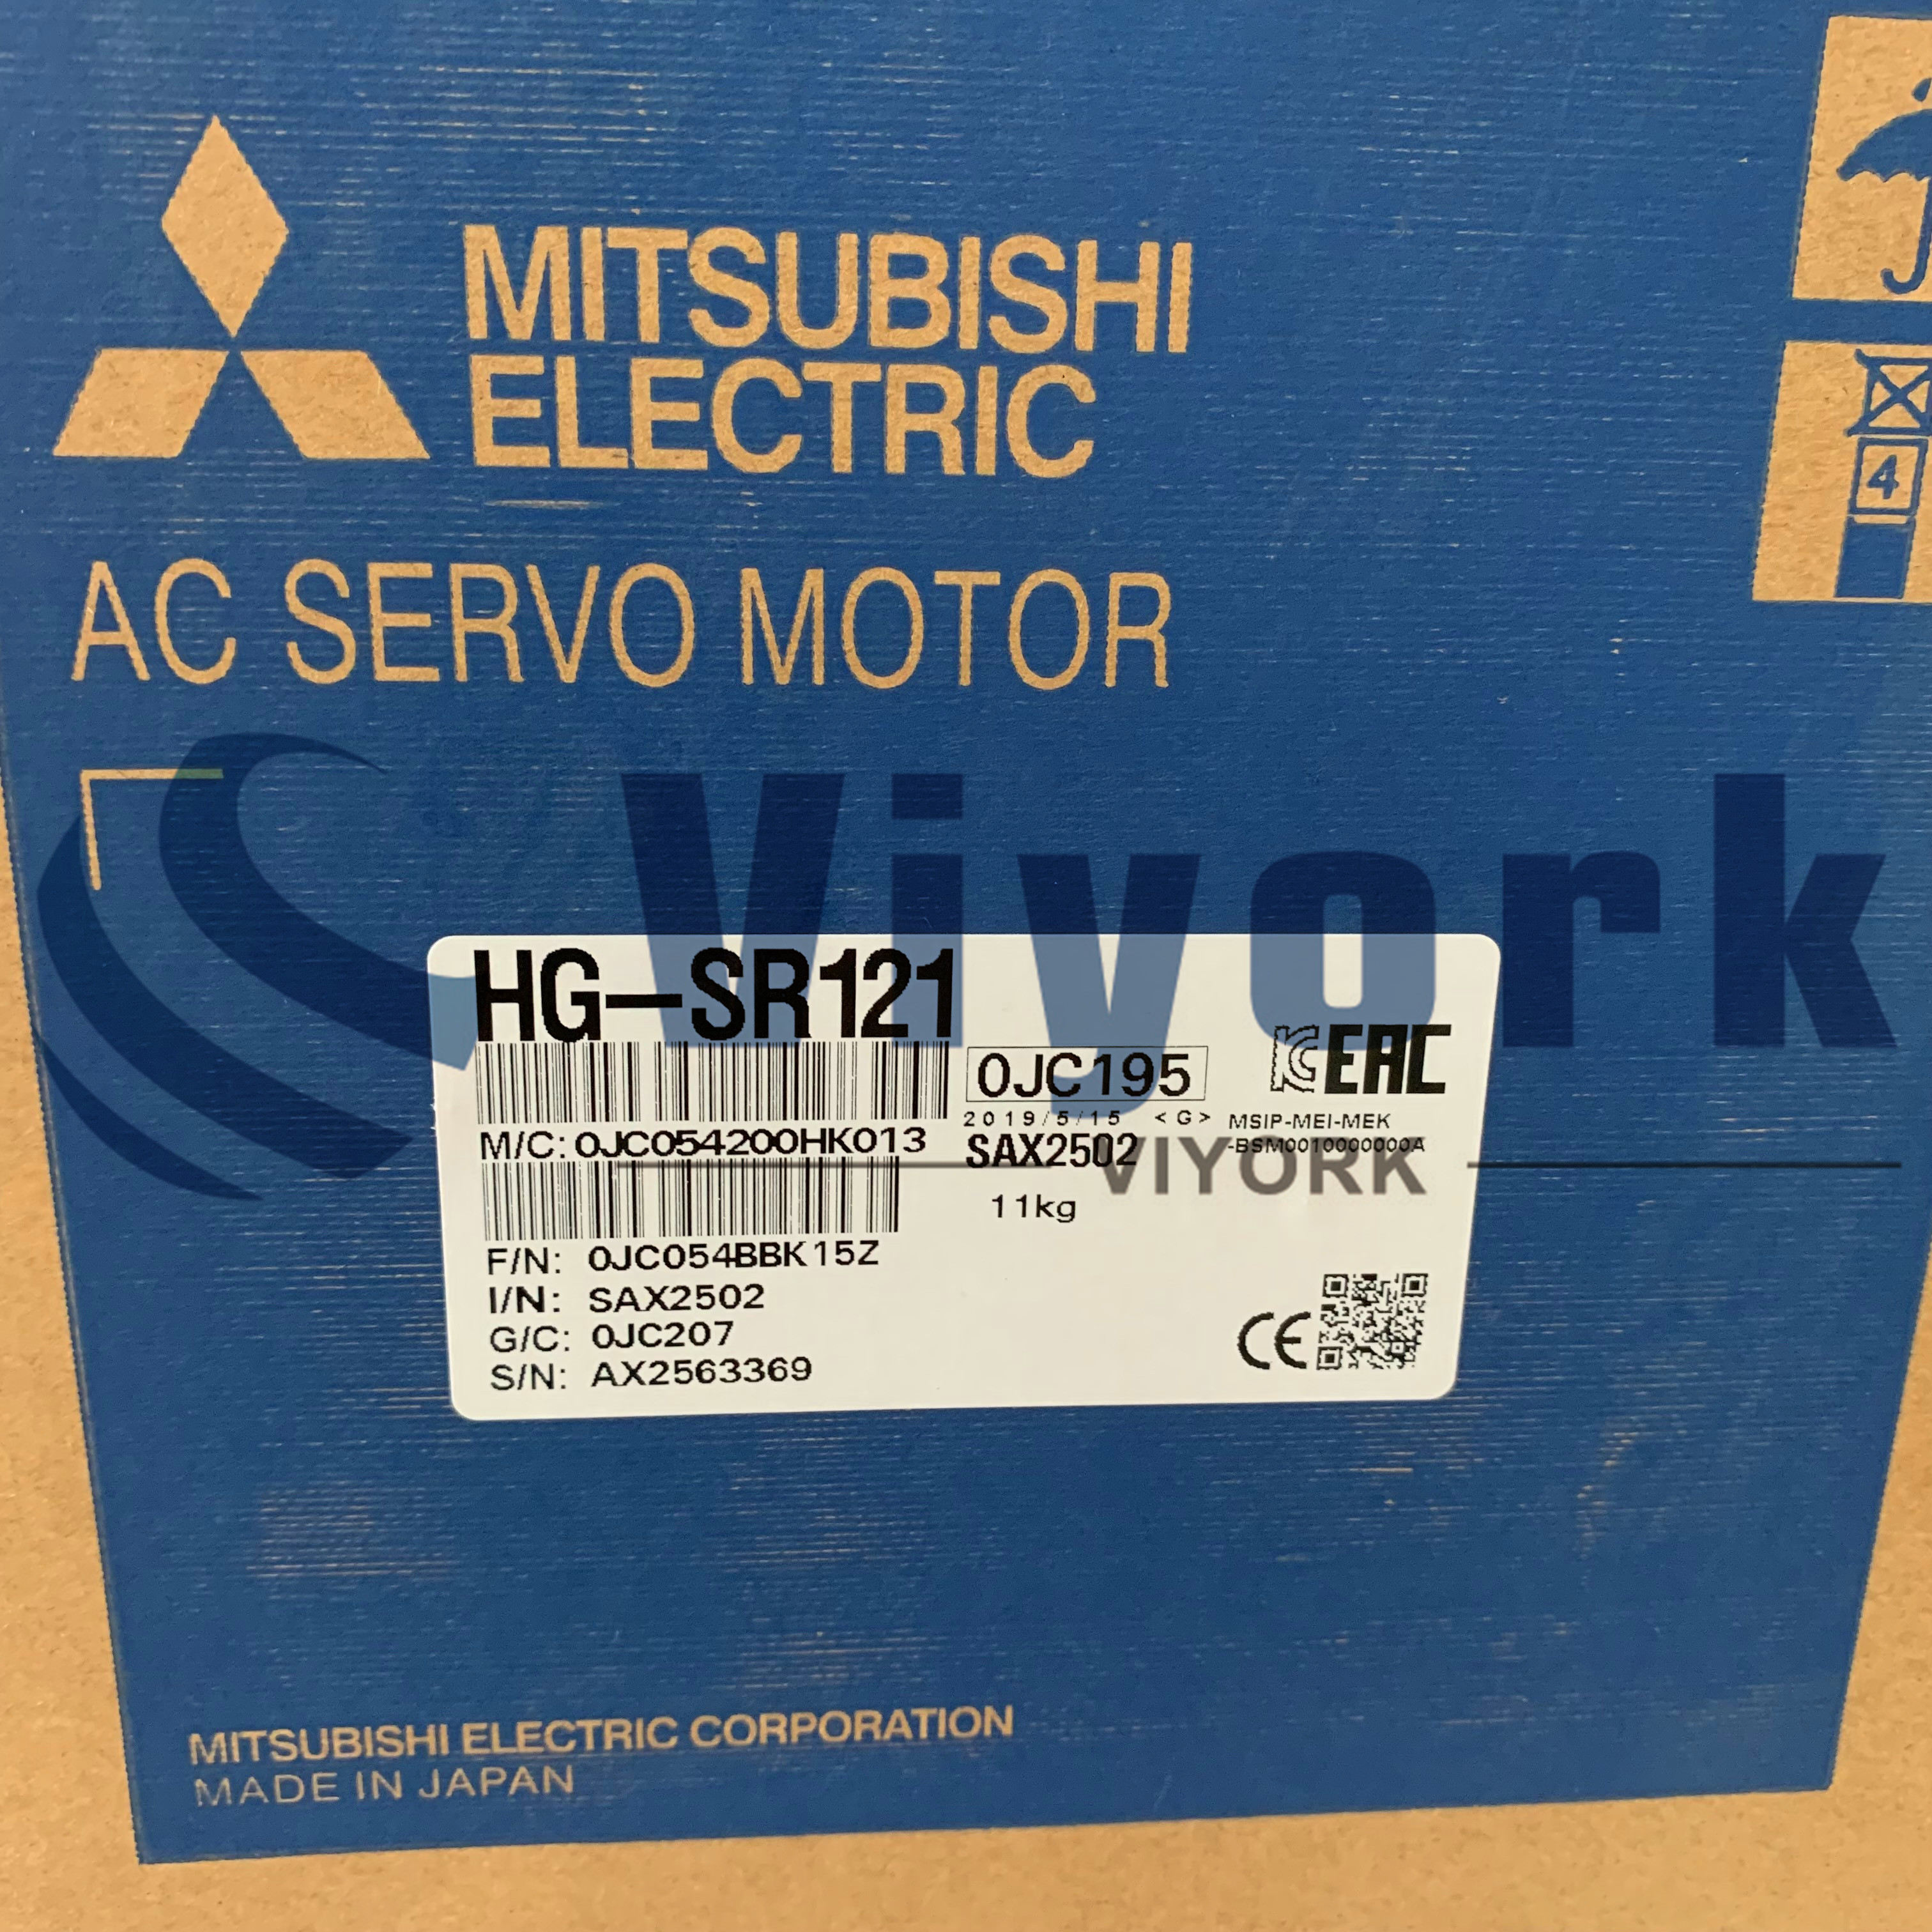 Mitsubishi HG-SR121 AC SERVO MOTOR 1.2KW 200V 1000RPM NEW